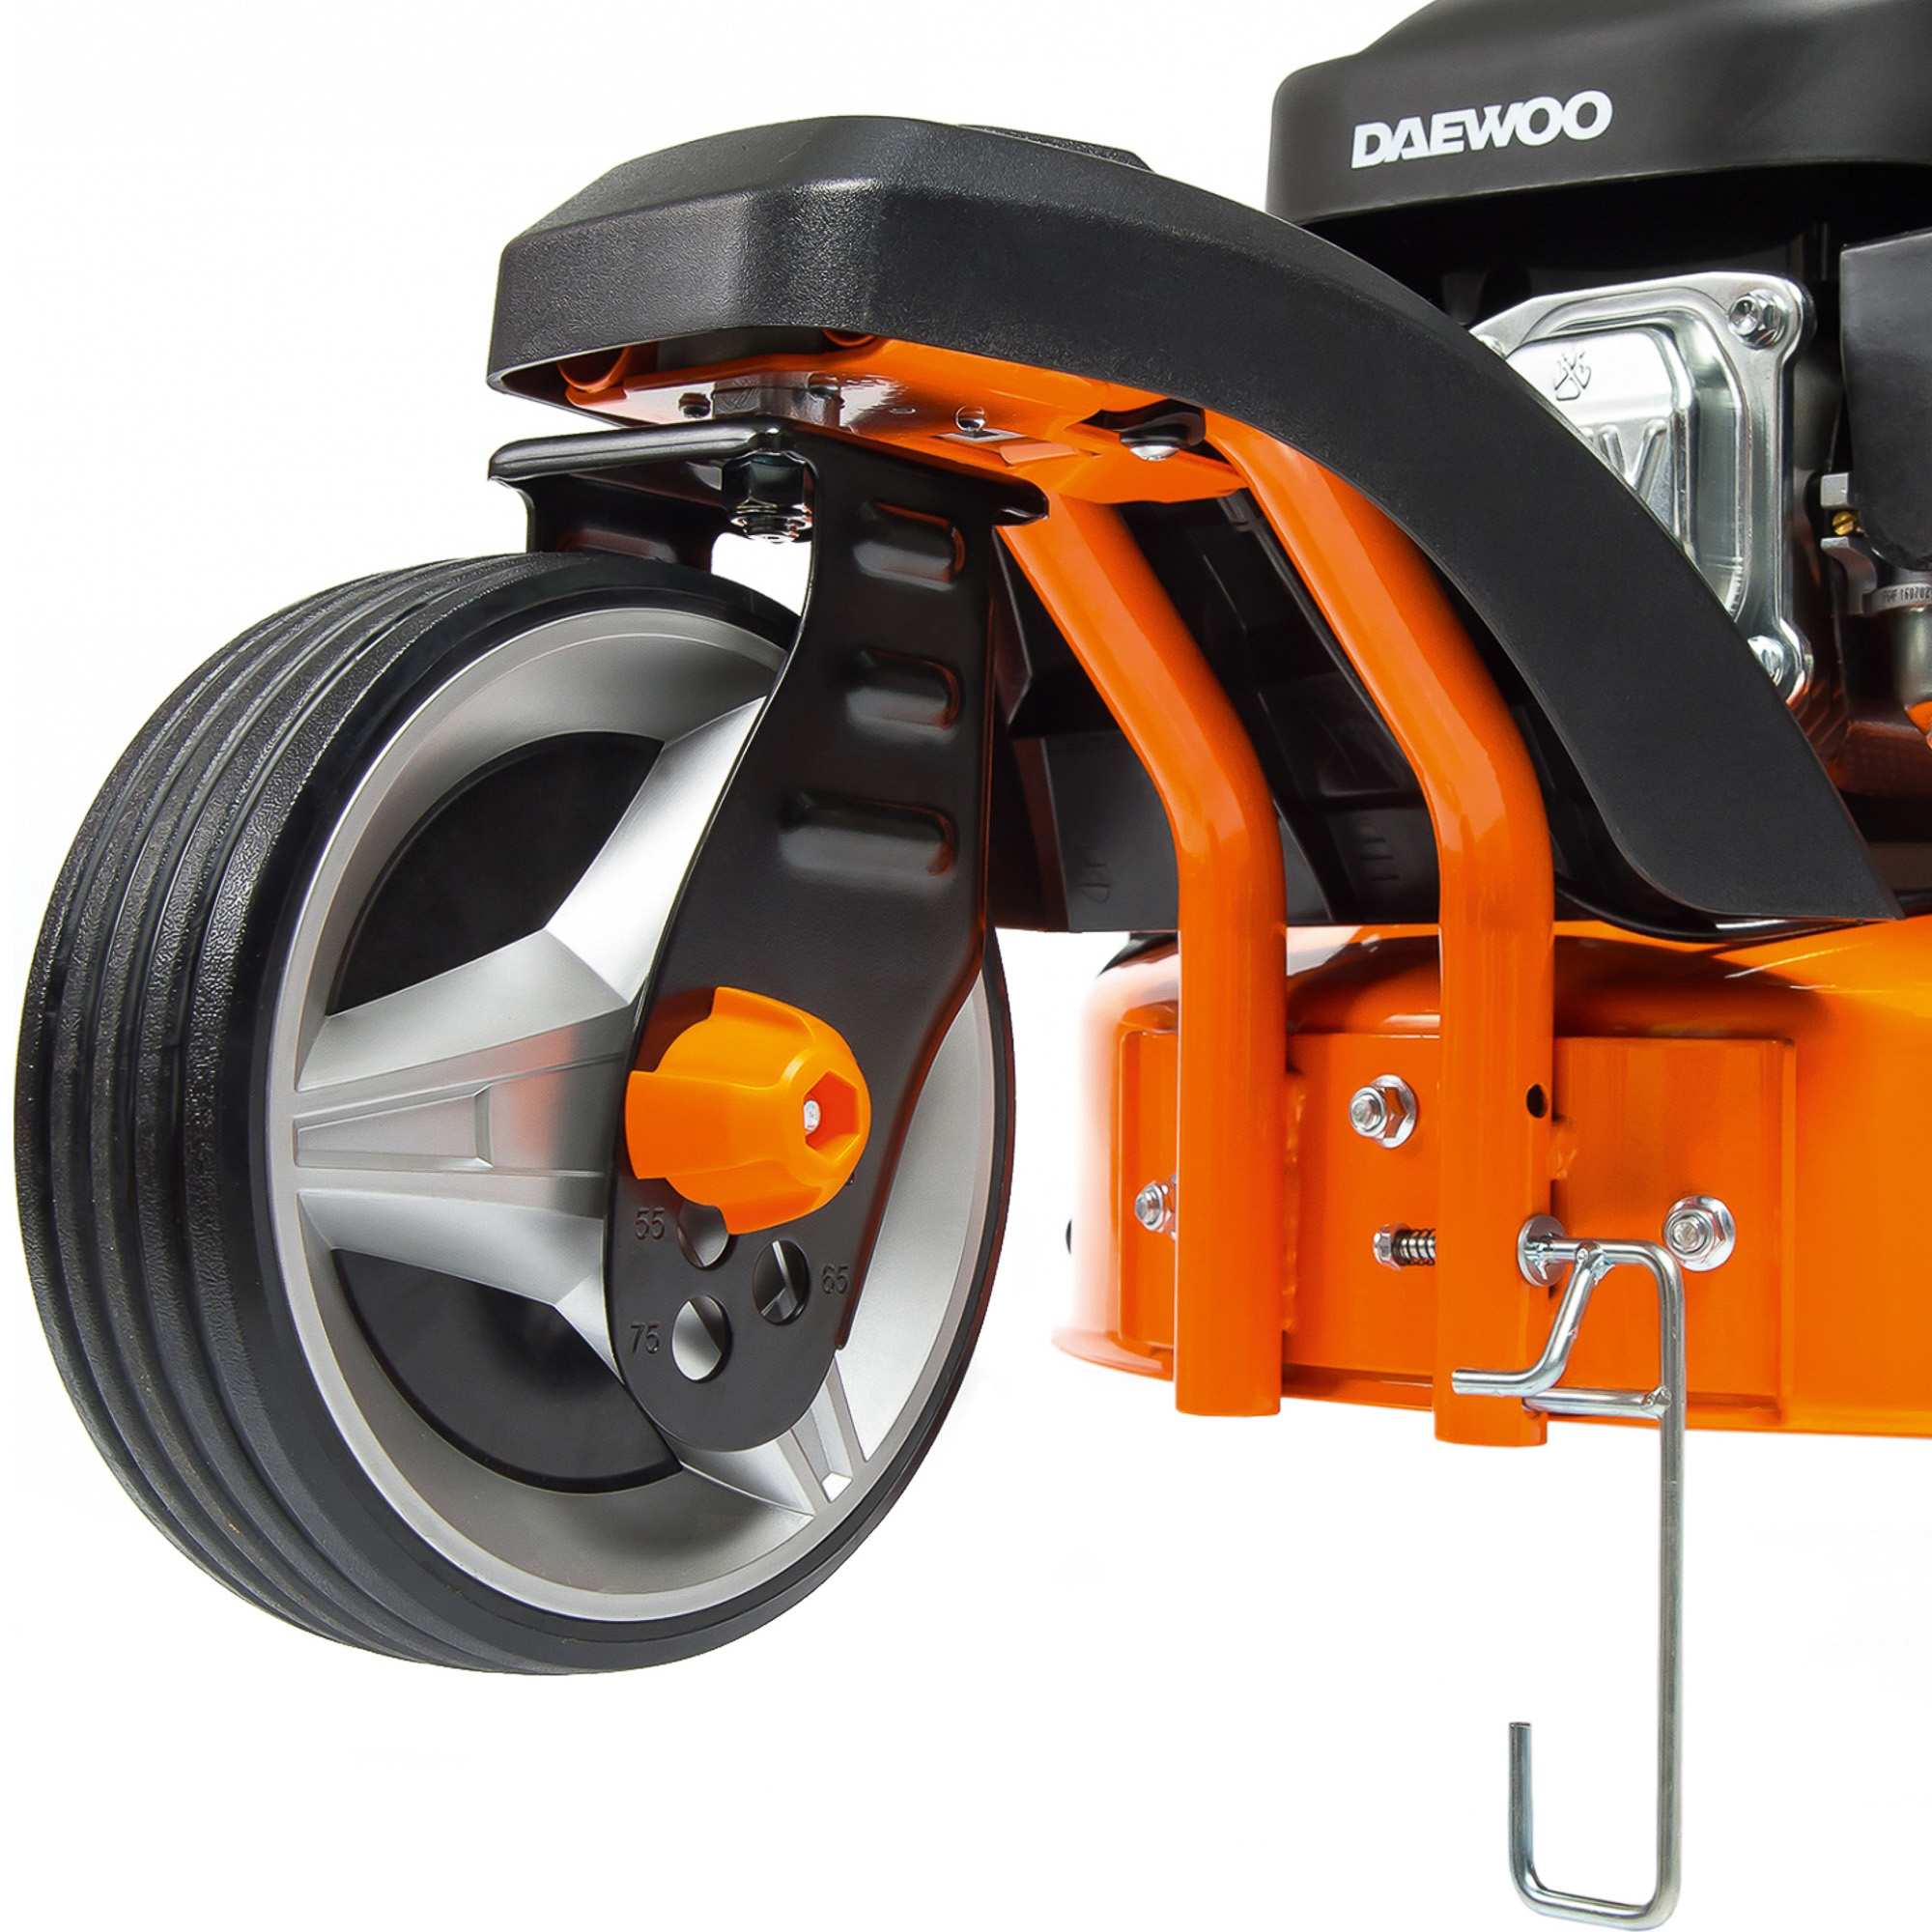 Газонокосилка Daewoo DLM 5100SR, цвет оранжевый DLM5100SR - фото 5